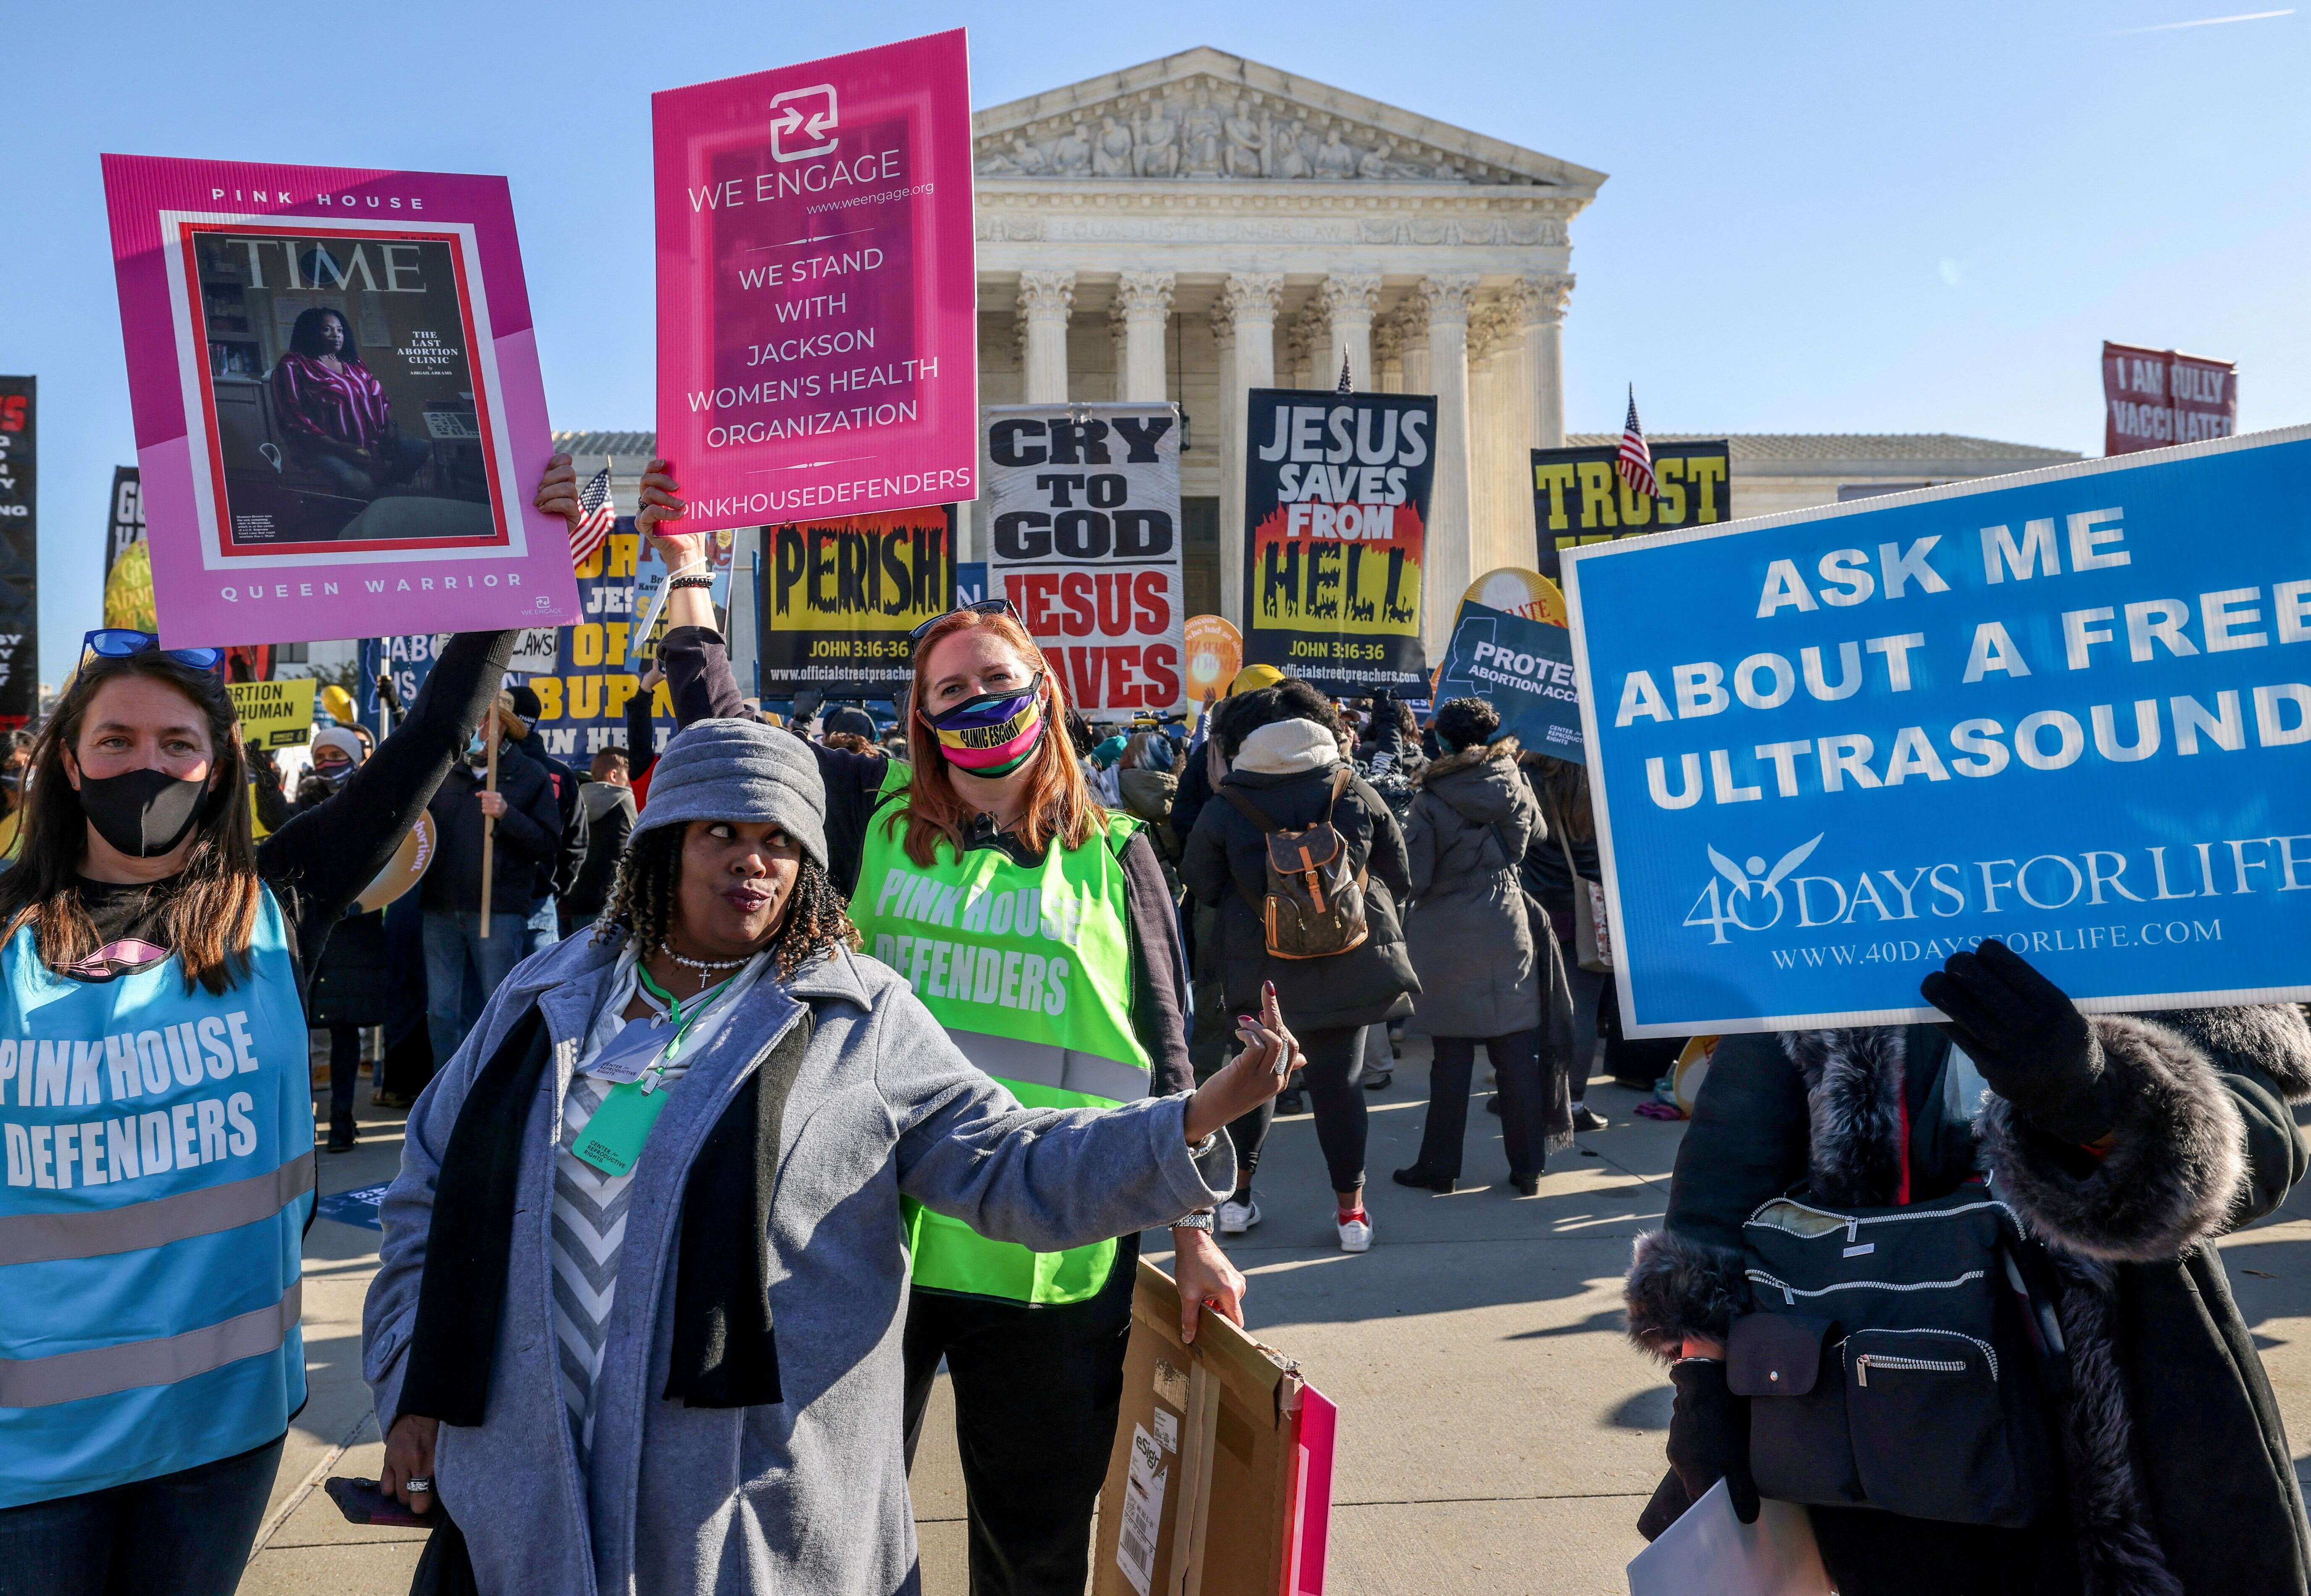 Aux États-Unis, la lutte entre les pro et les anti-avortement fait rage alors qu'une vaste offensive conservatrice a lieu pour limiter l'IVG.